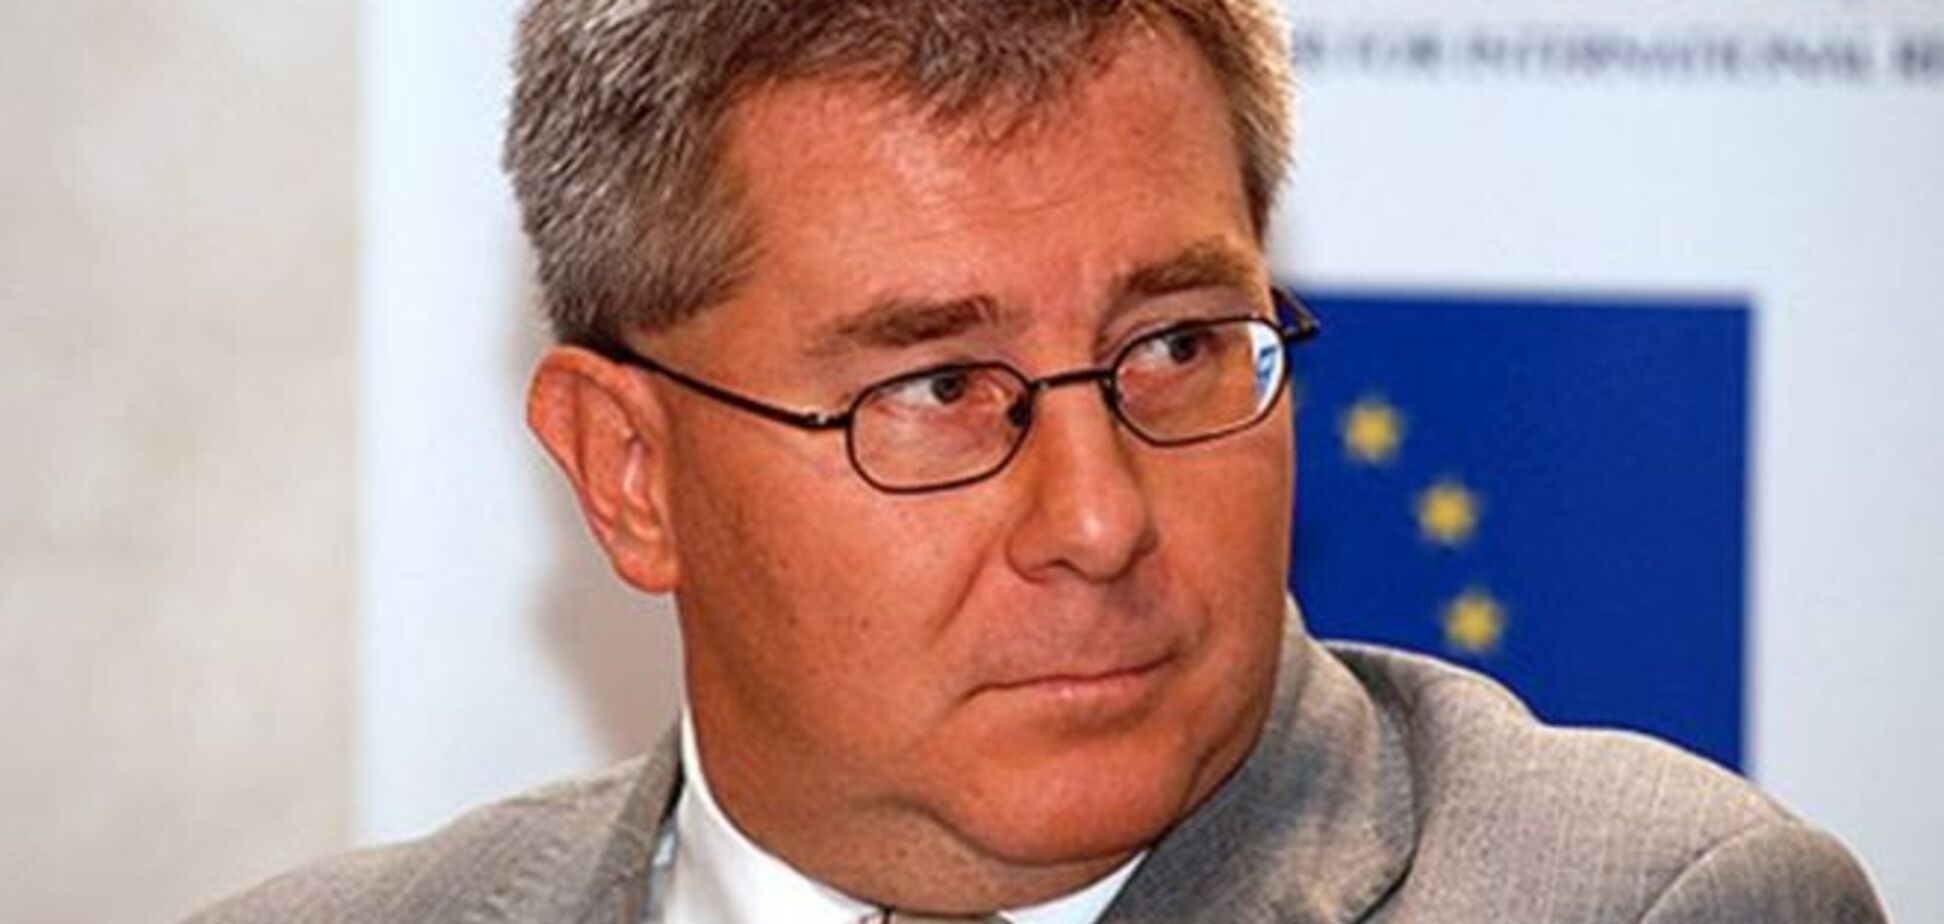 Вице-спикер Европарламента оригинально проявил солидарность с Украиной